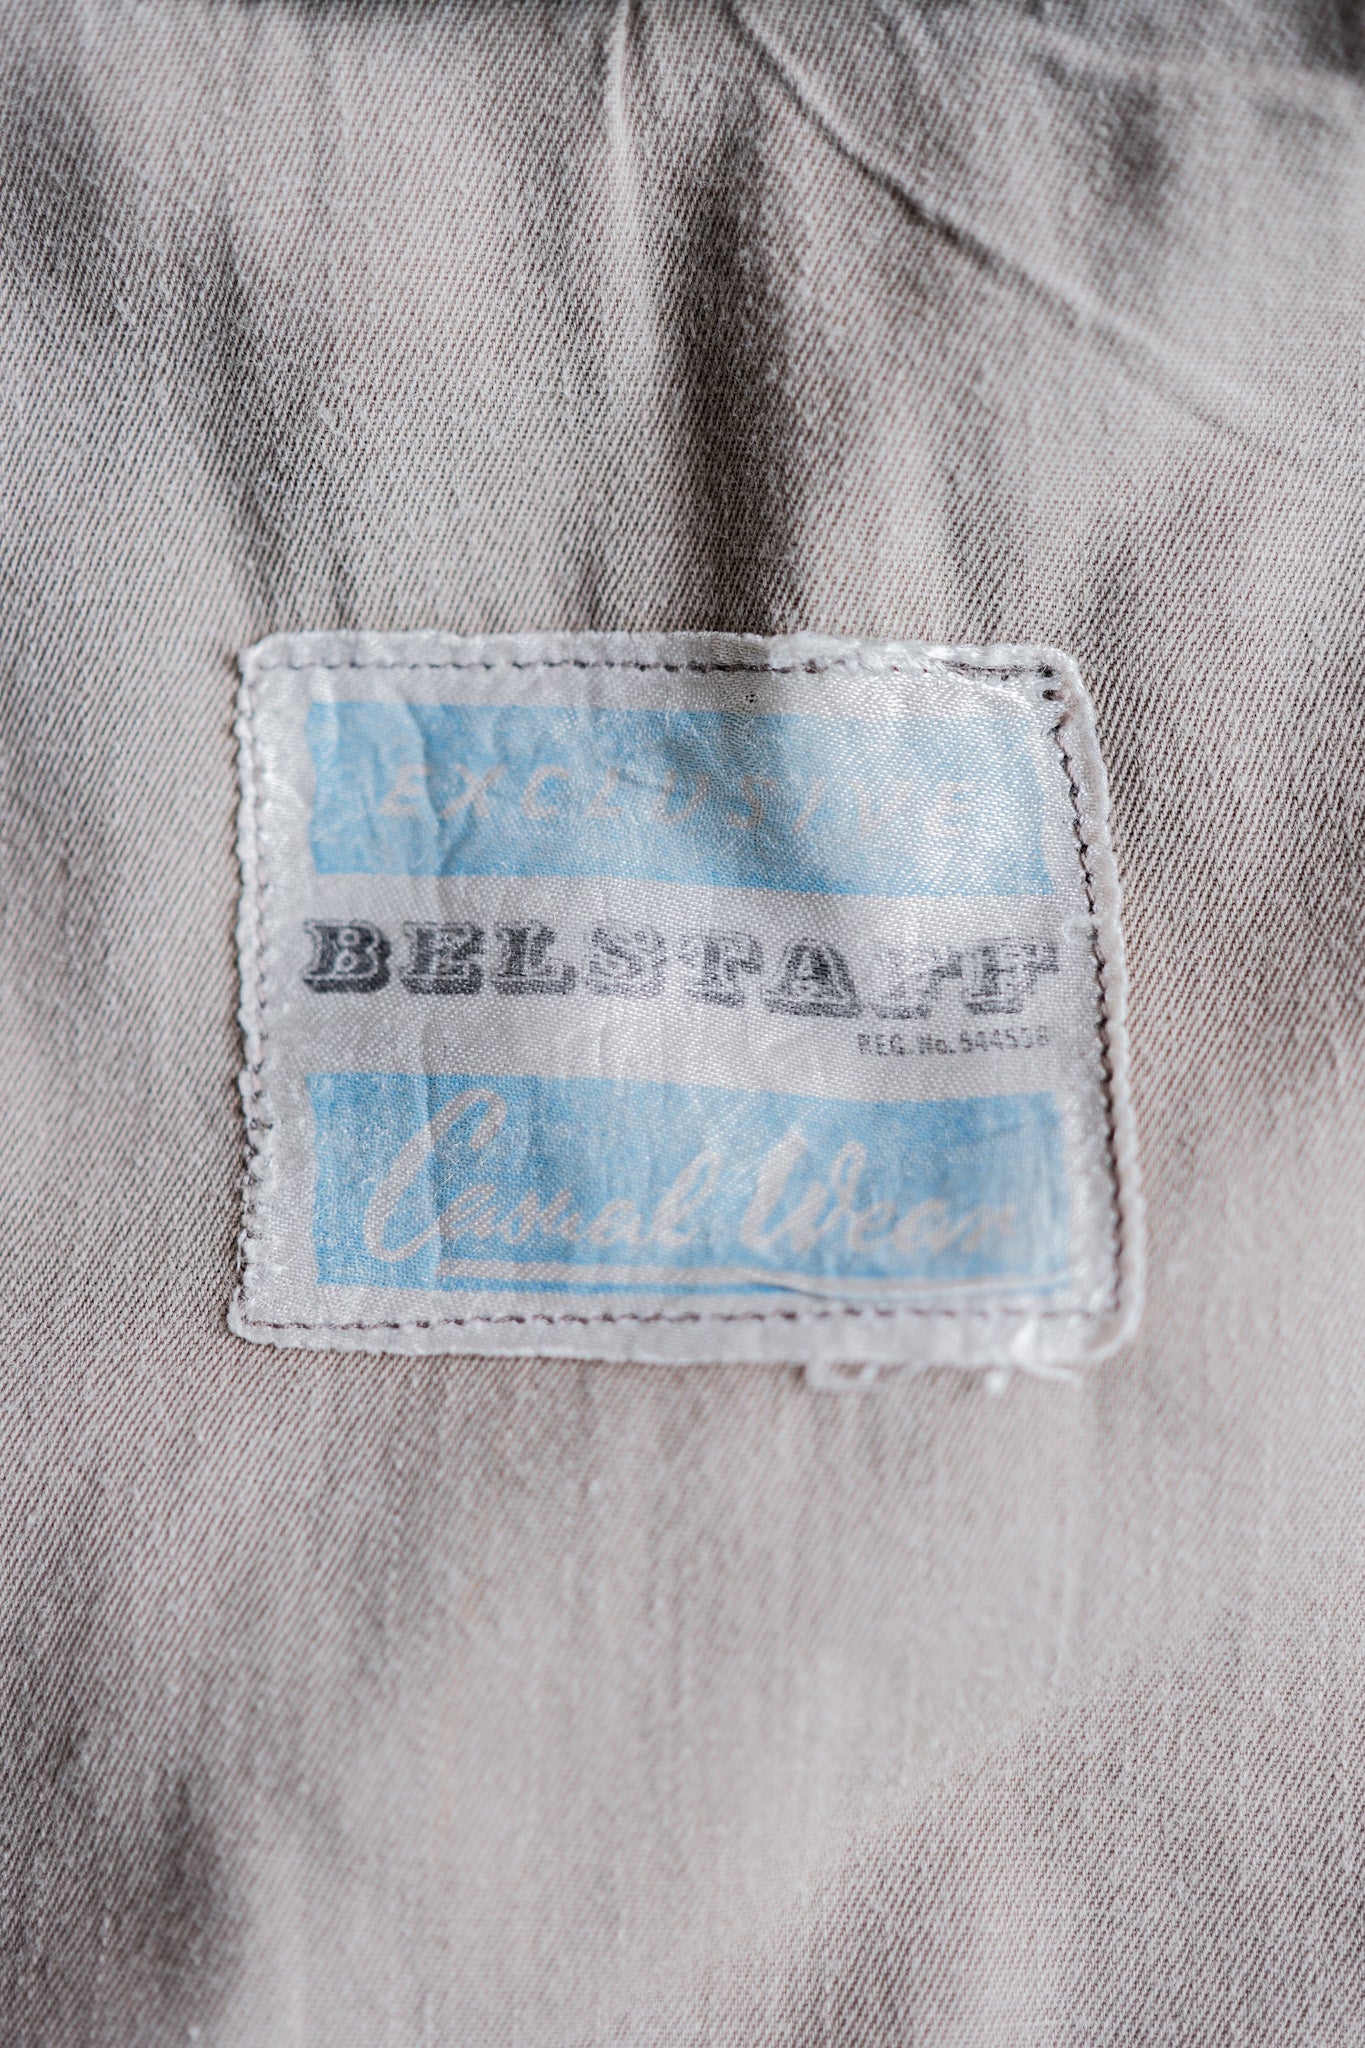 【~60's】Vintage Belstaff Cotton Smock "Dalesman"